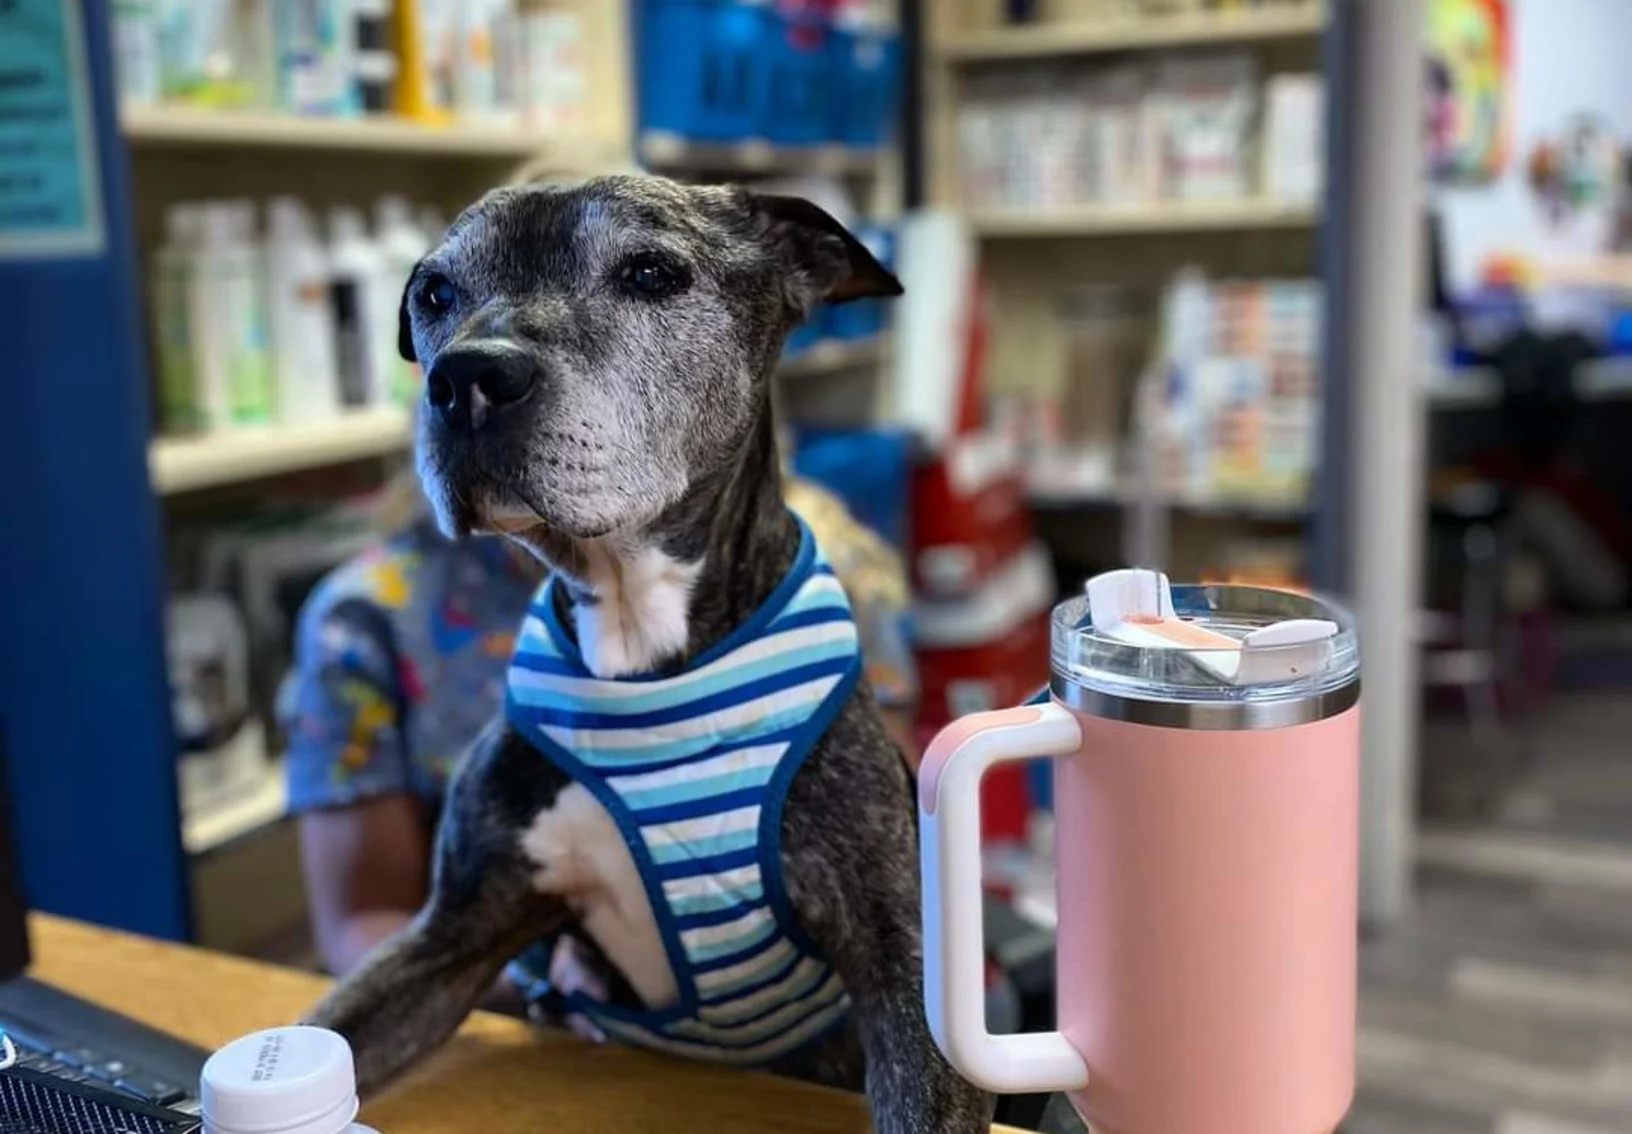 Senior dog at front desk, wearing harness